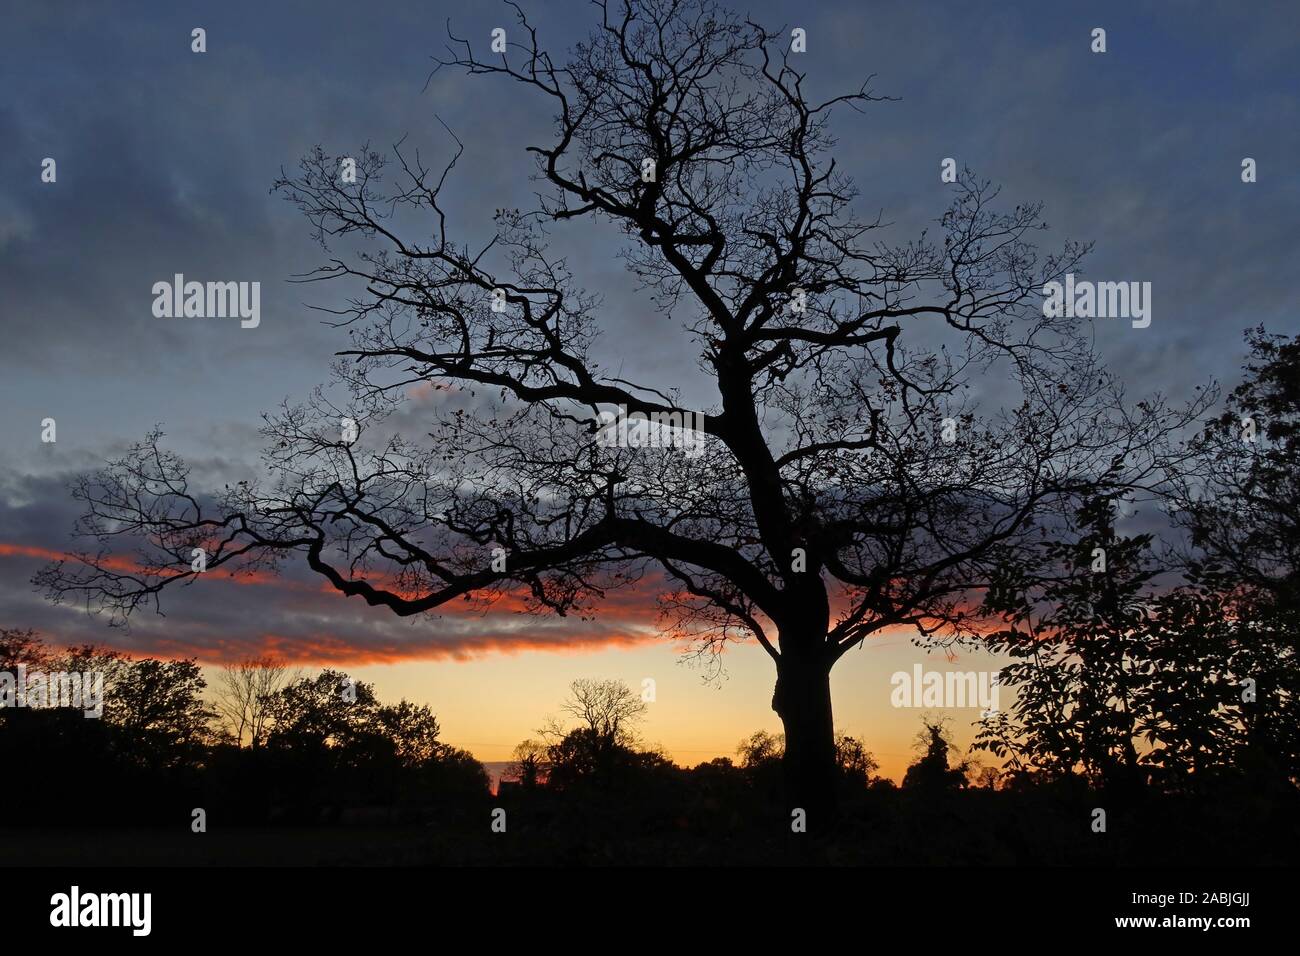 Arbre sans feuilles, coucher de soleil d'hiver, crépuscule, Antrobus Village, Northwich, Cheshire, Angleterre, Royaume-Uni, CW9 6LB Banque D'Images